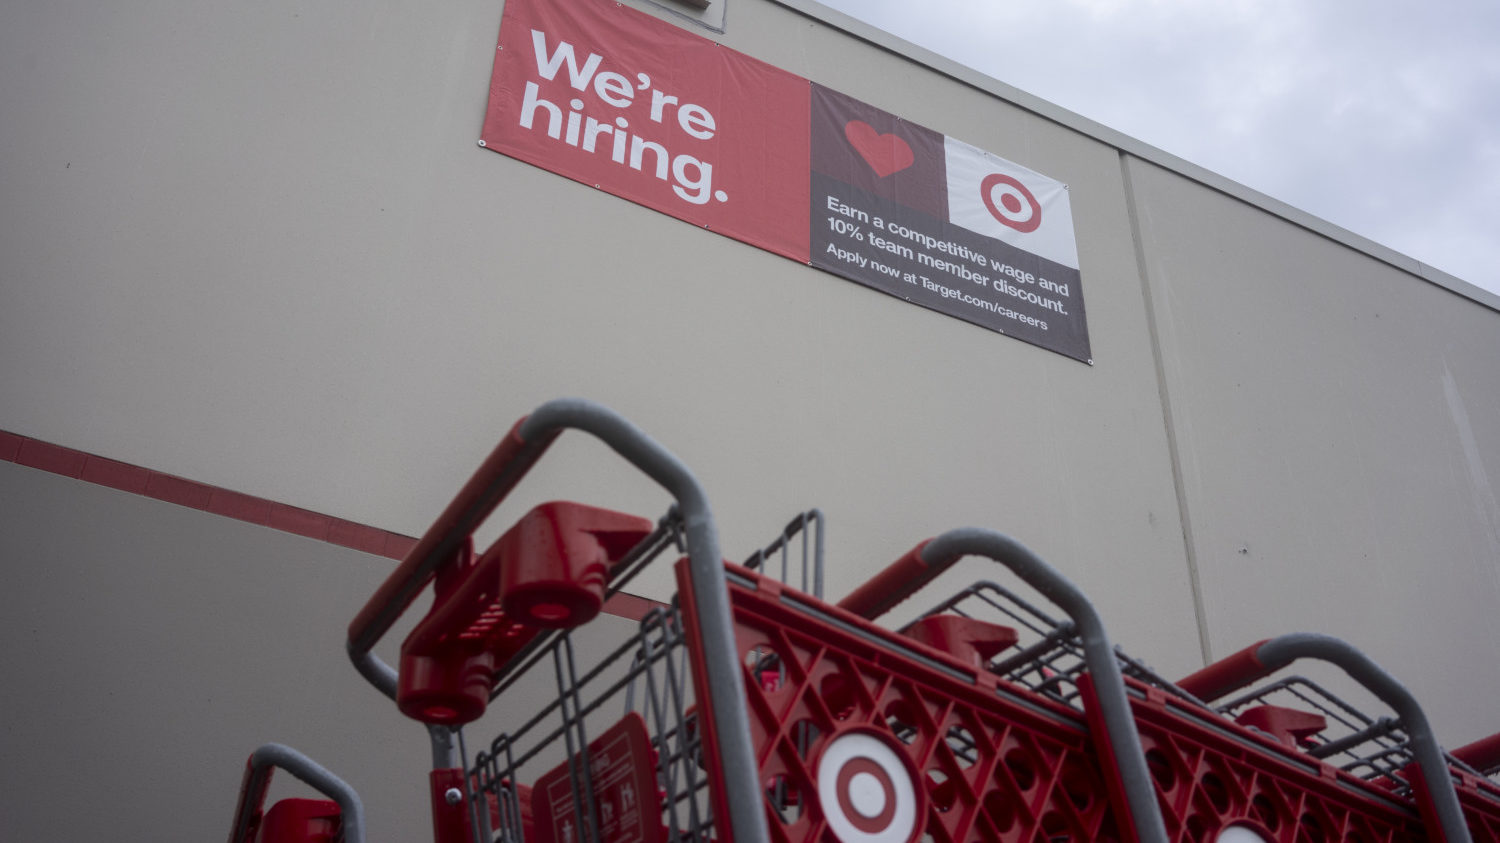 Target sign saying, "We're hiring"